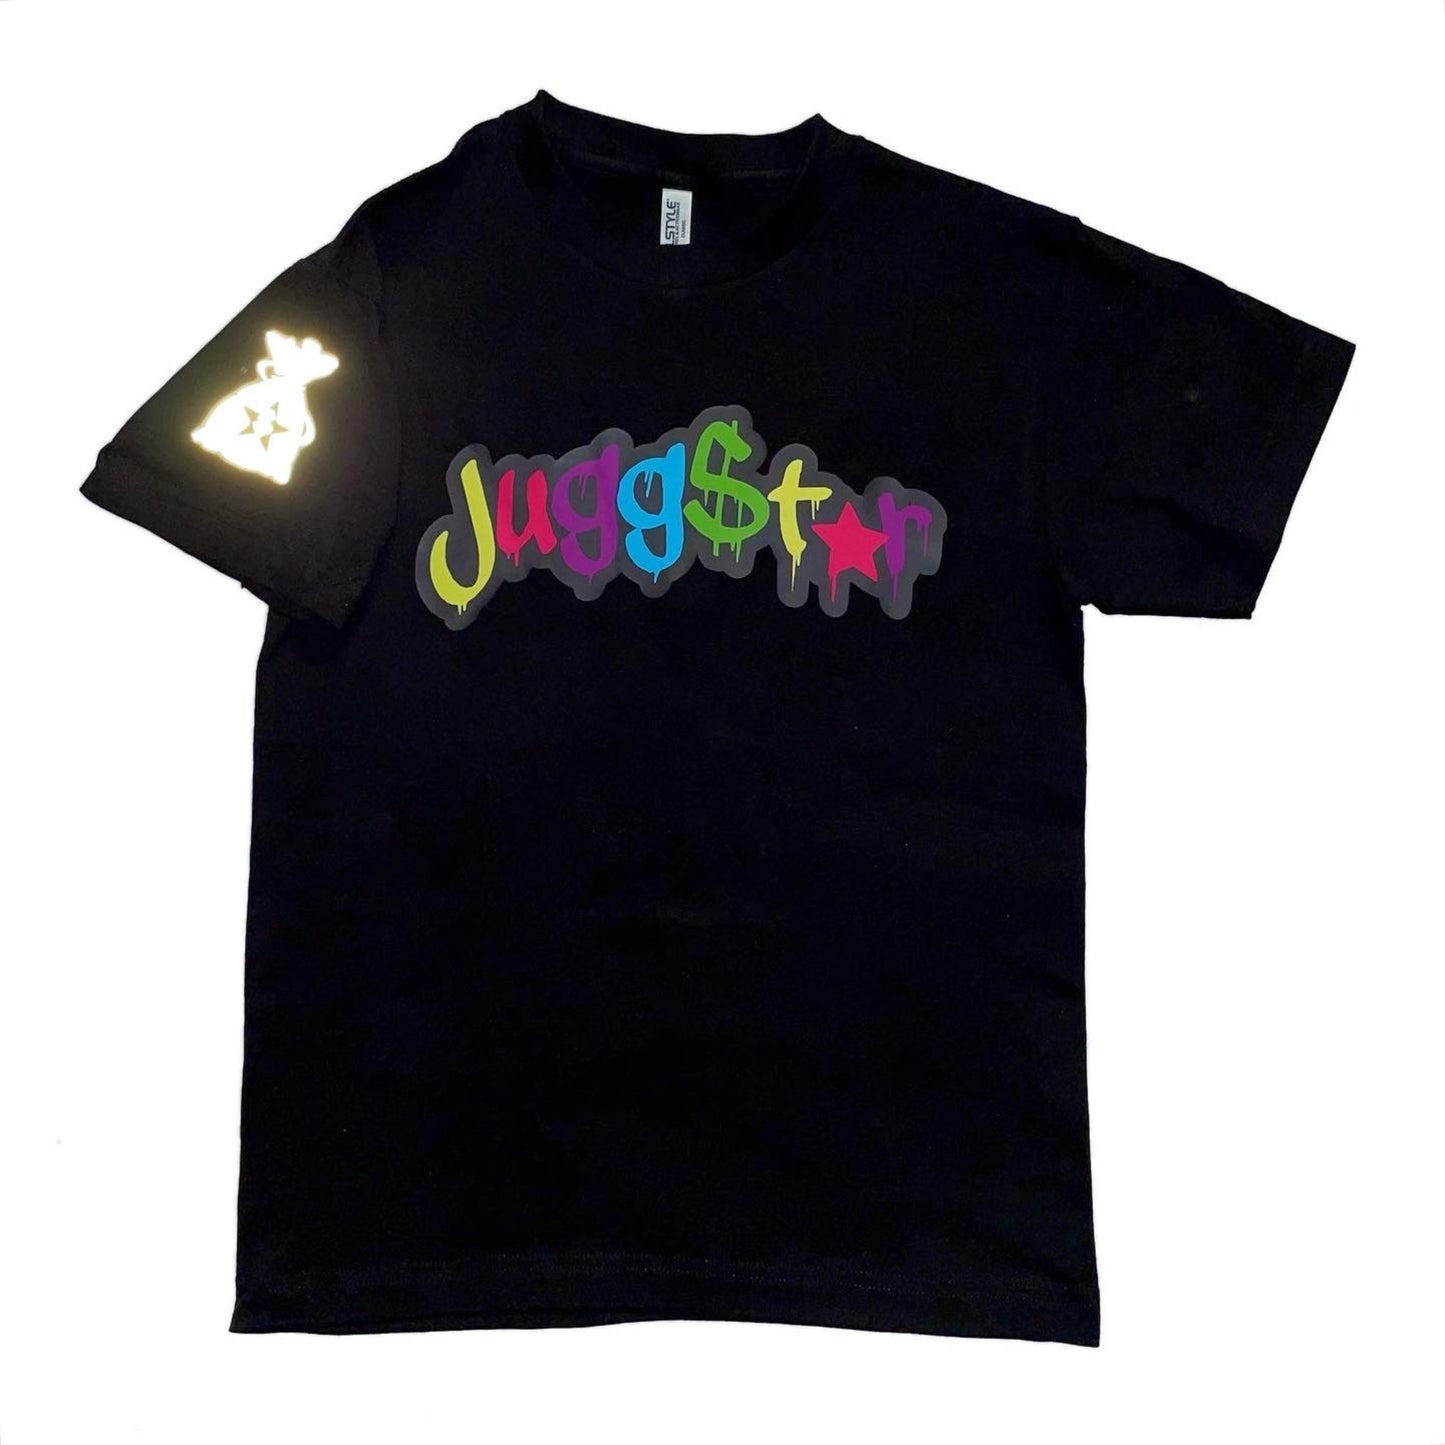 Jugg$star Short Sleeve Tshirt - Black